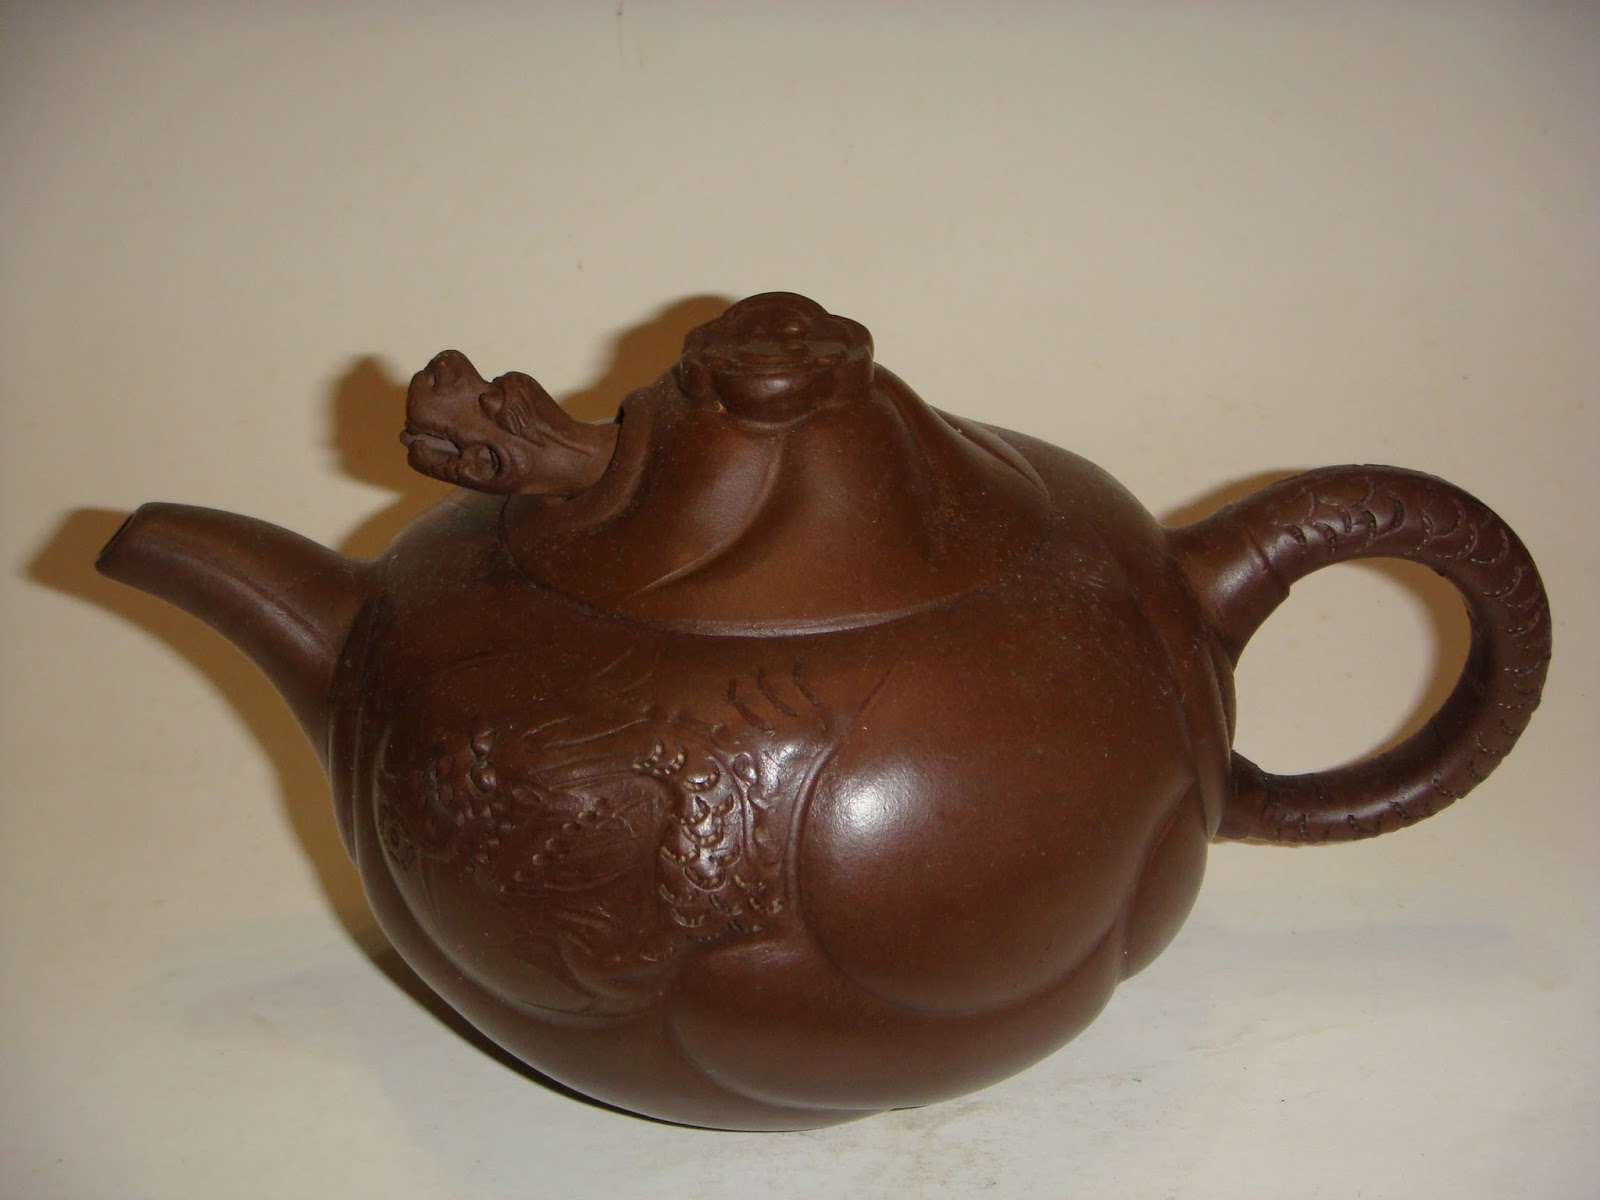 鱼化龙壶”是深受收藏爱好者喜爱的一款著名紫砂壶型。